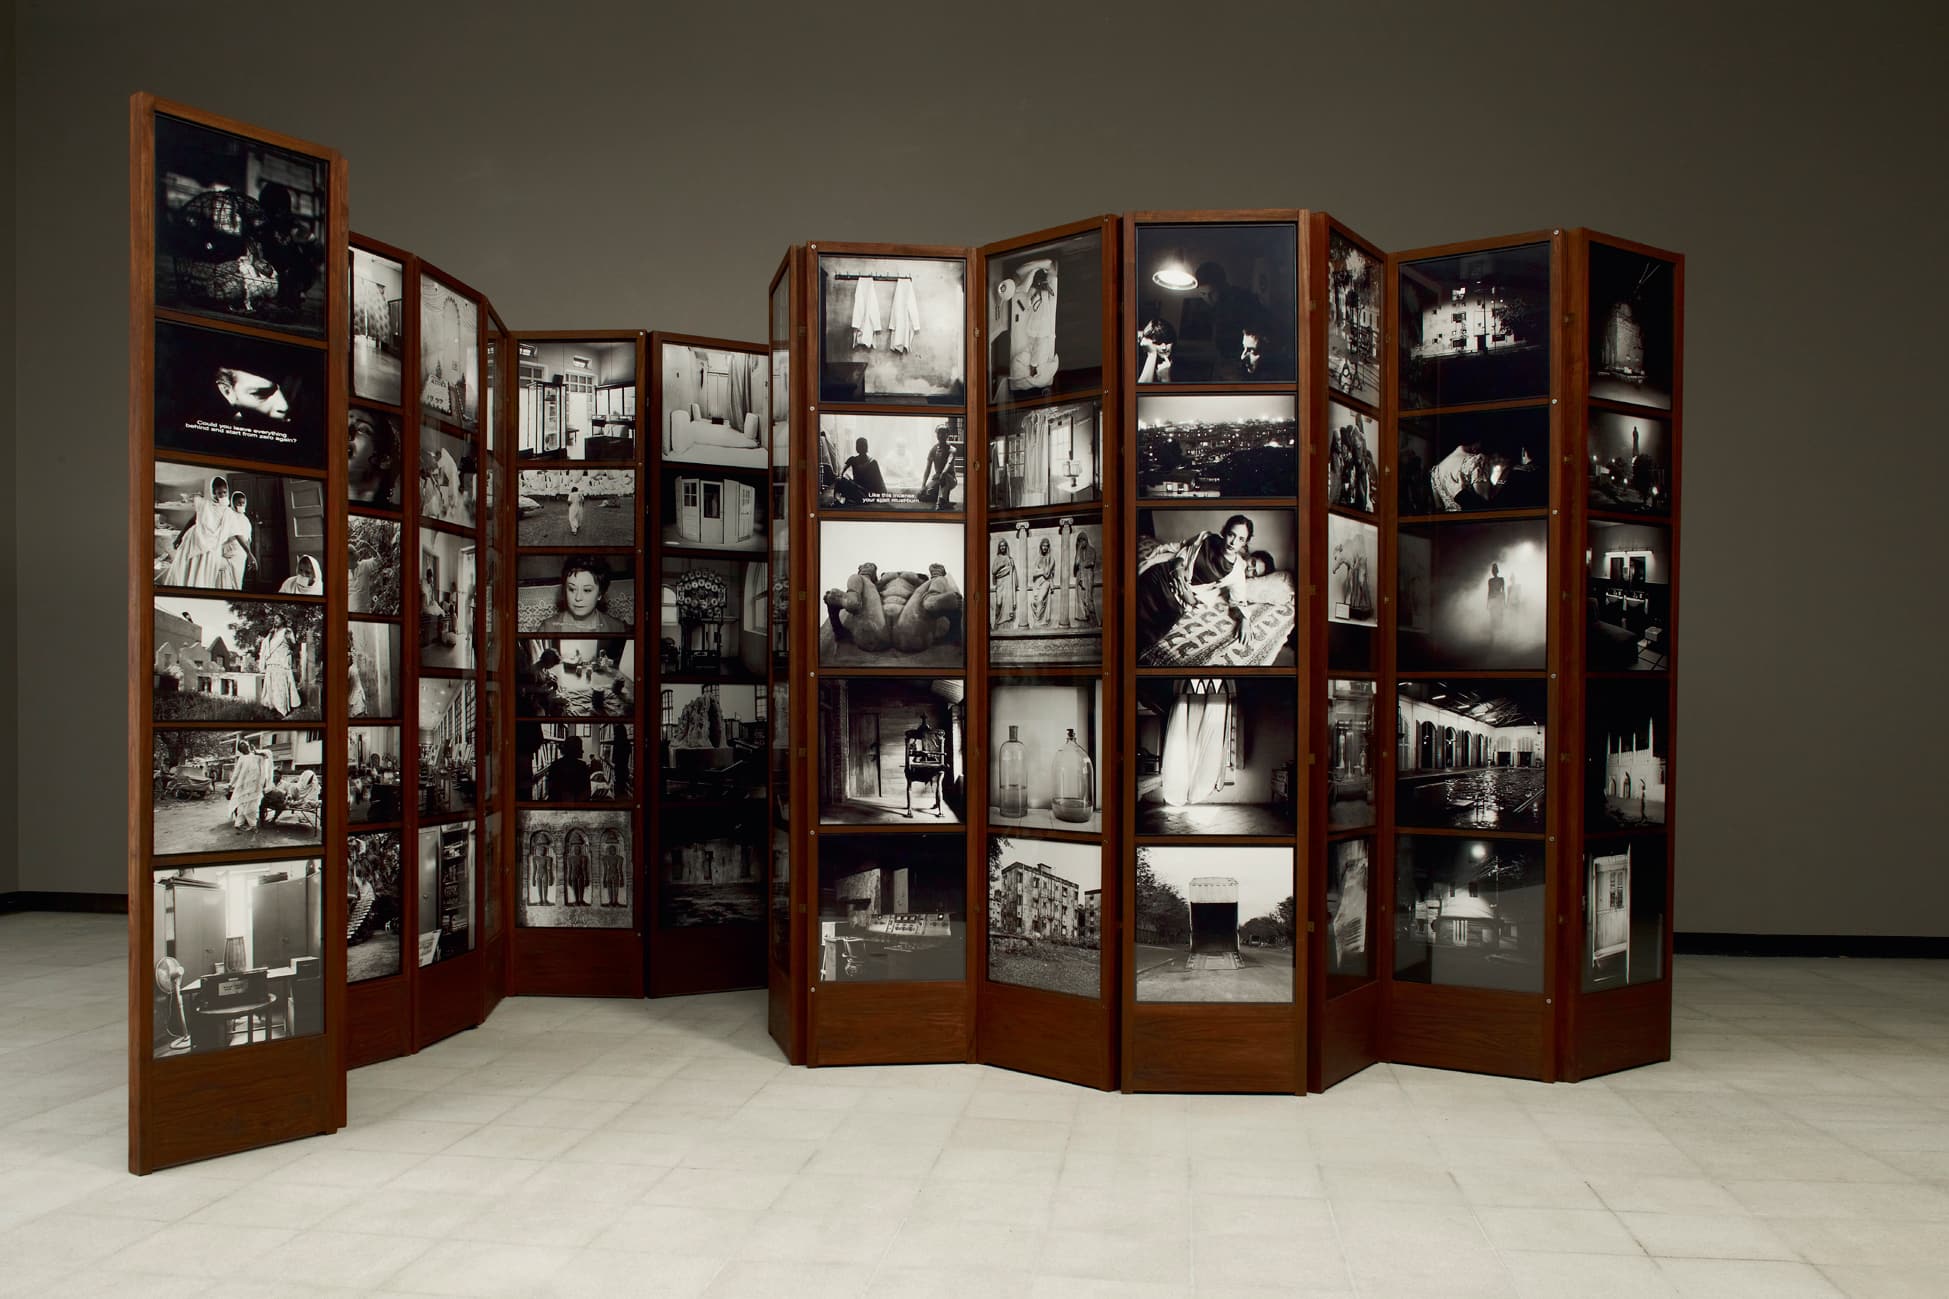 『ダヤニータ・シン インドの大きな家の美術館』展、有機的な「ミュージアム」からつくられる生きた写真 | ミュージアム・オブ・チャンス